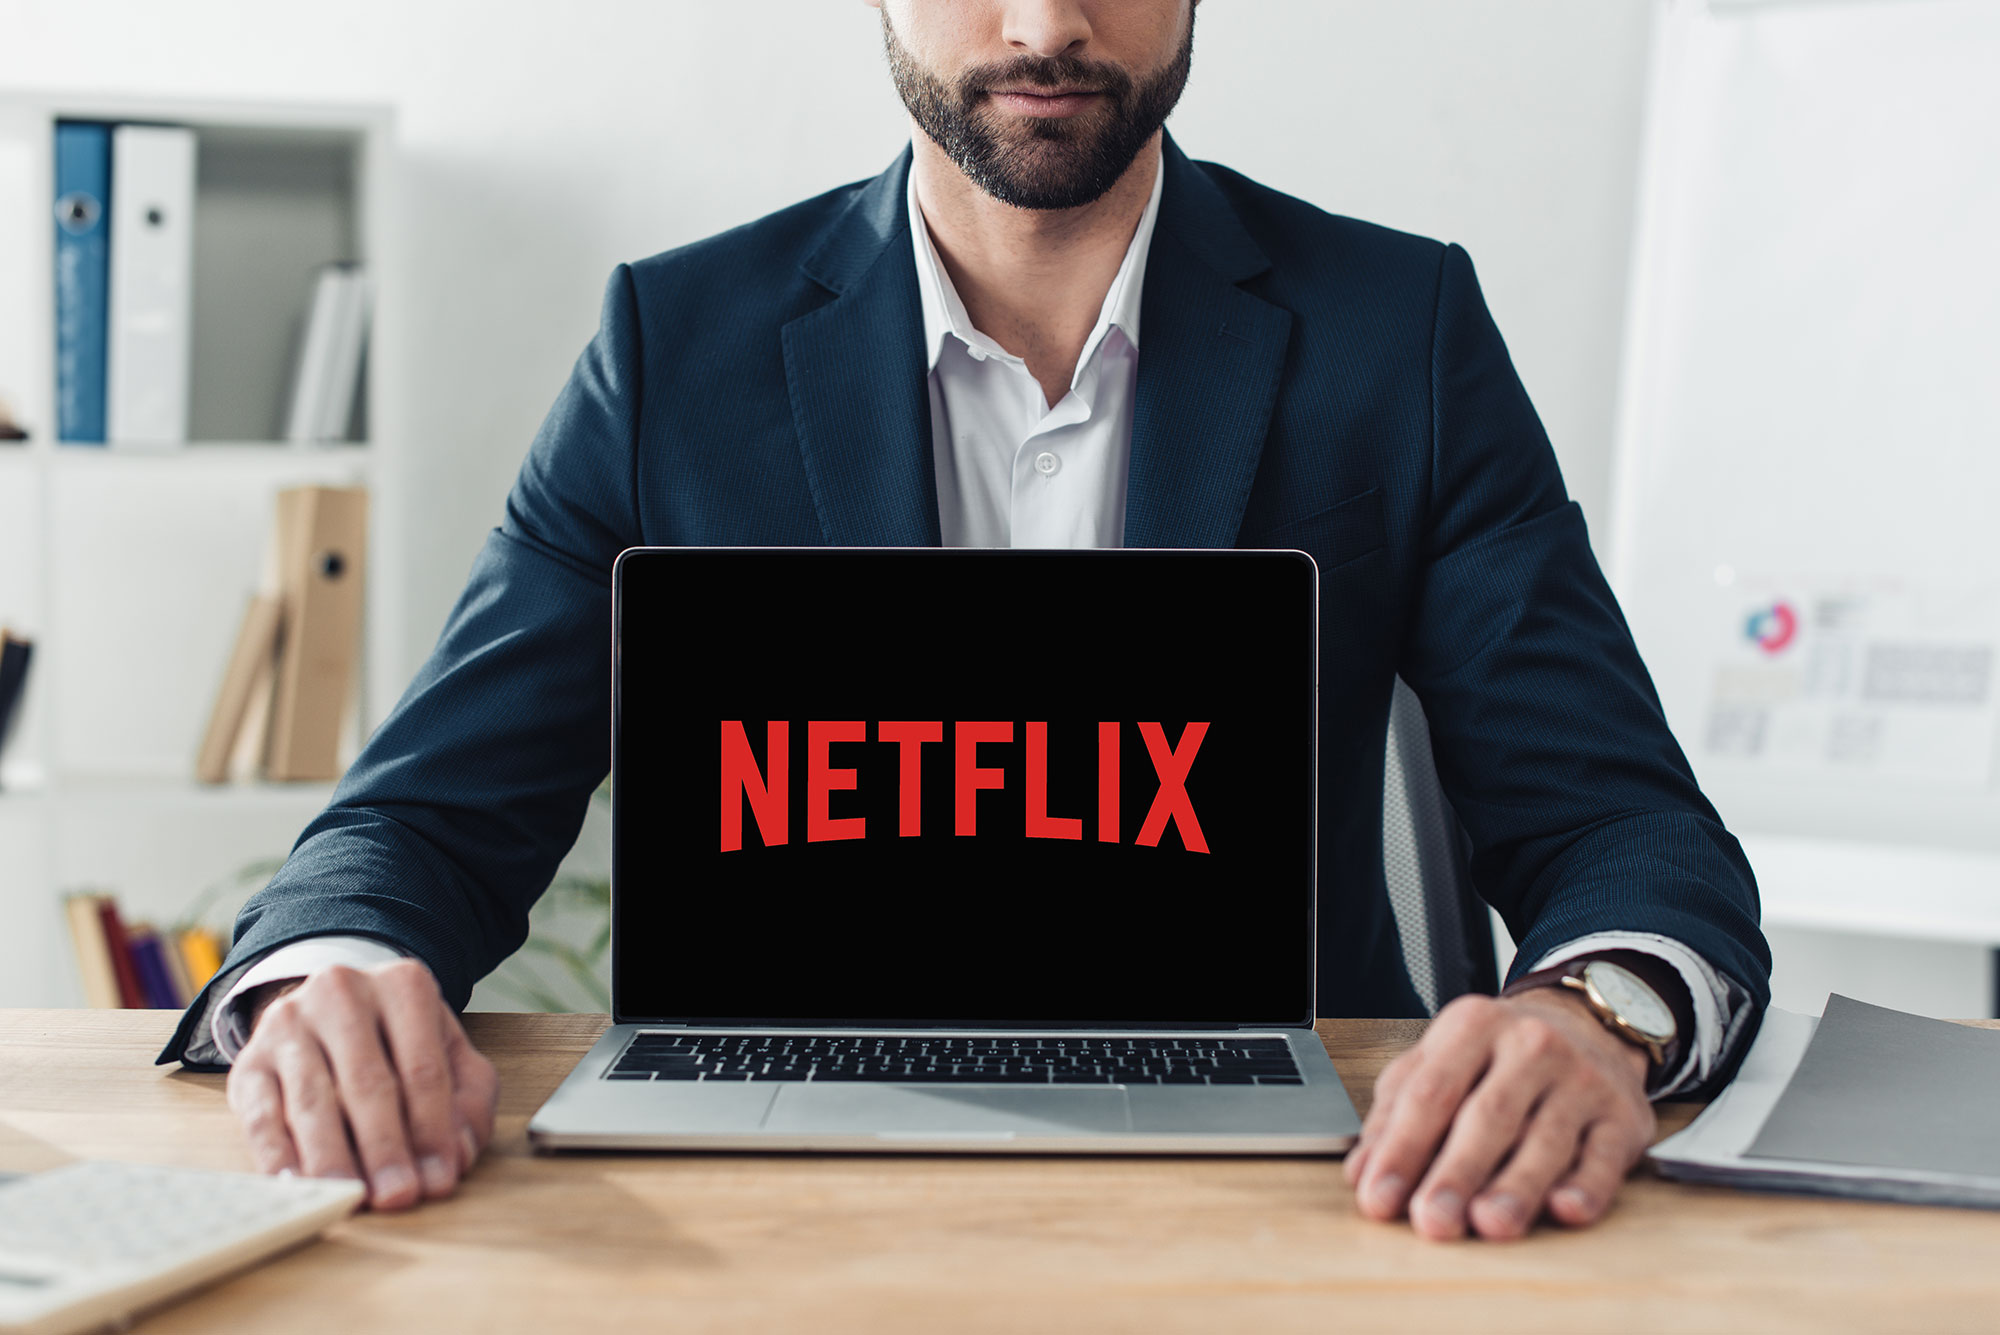 Netflix lanza trabajo con salario de hasta 15 millones de pesos al año